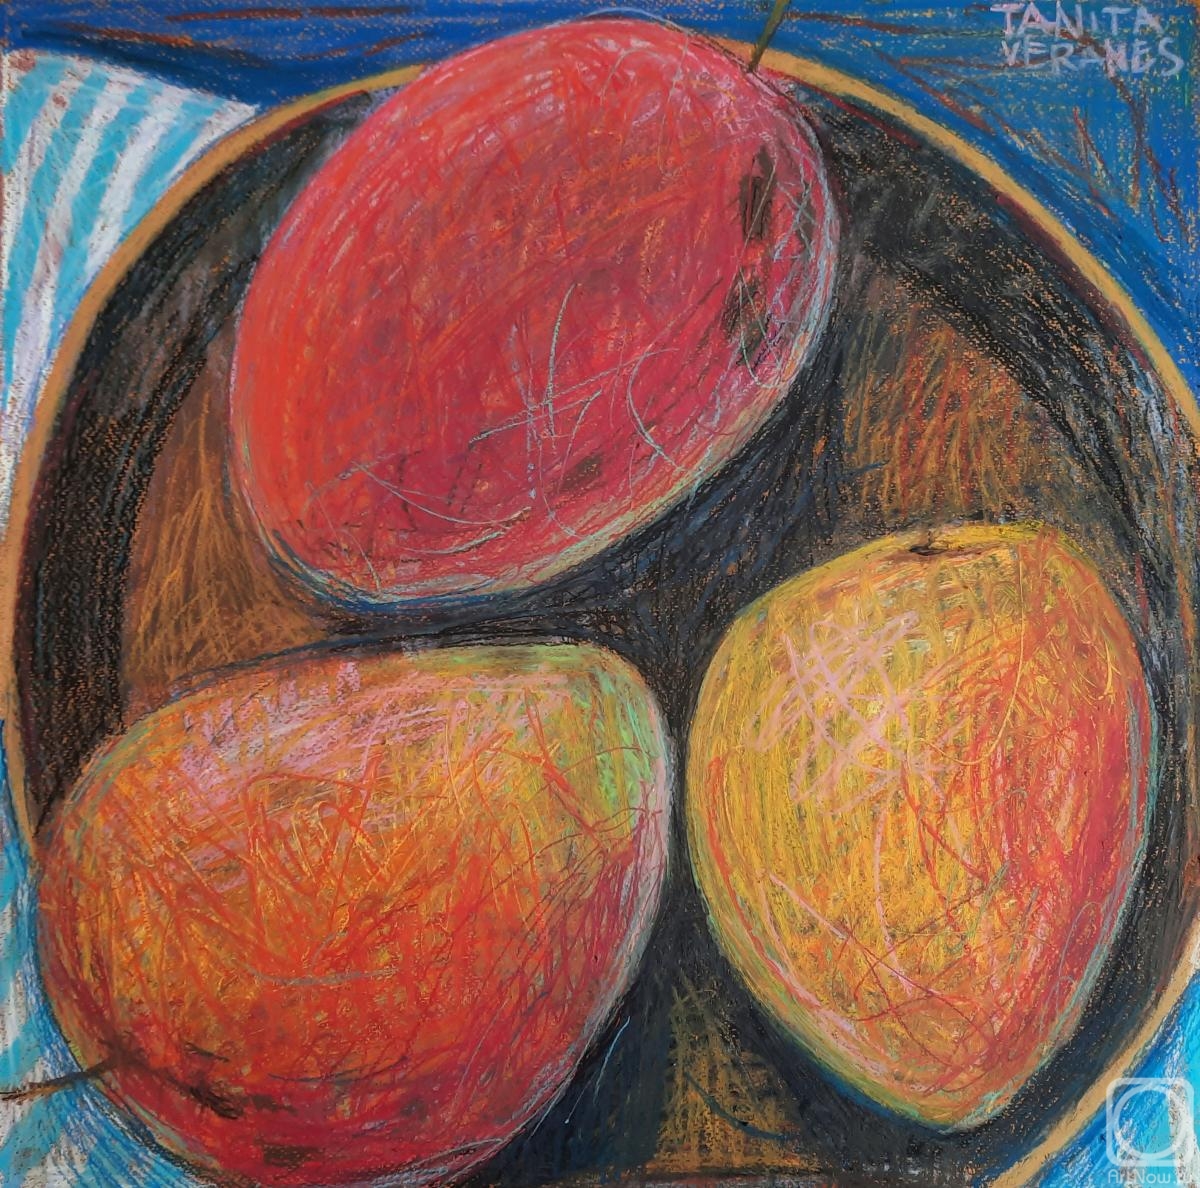 Veranes Tatiana. Three mangoes